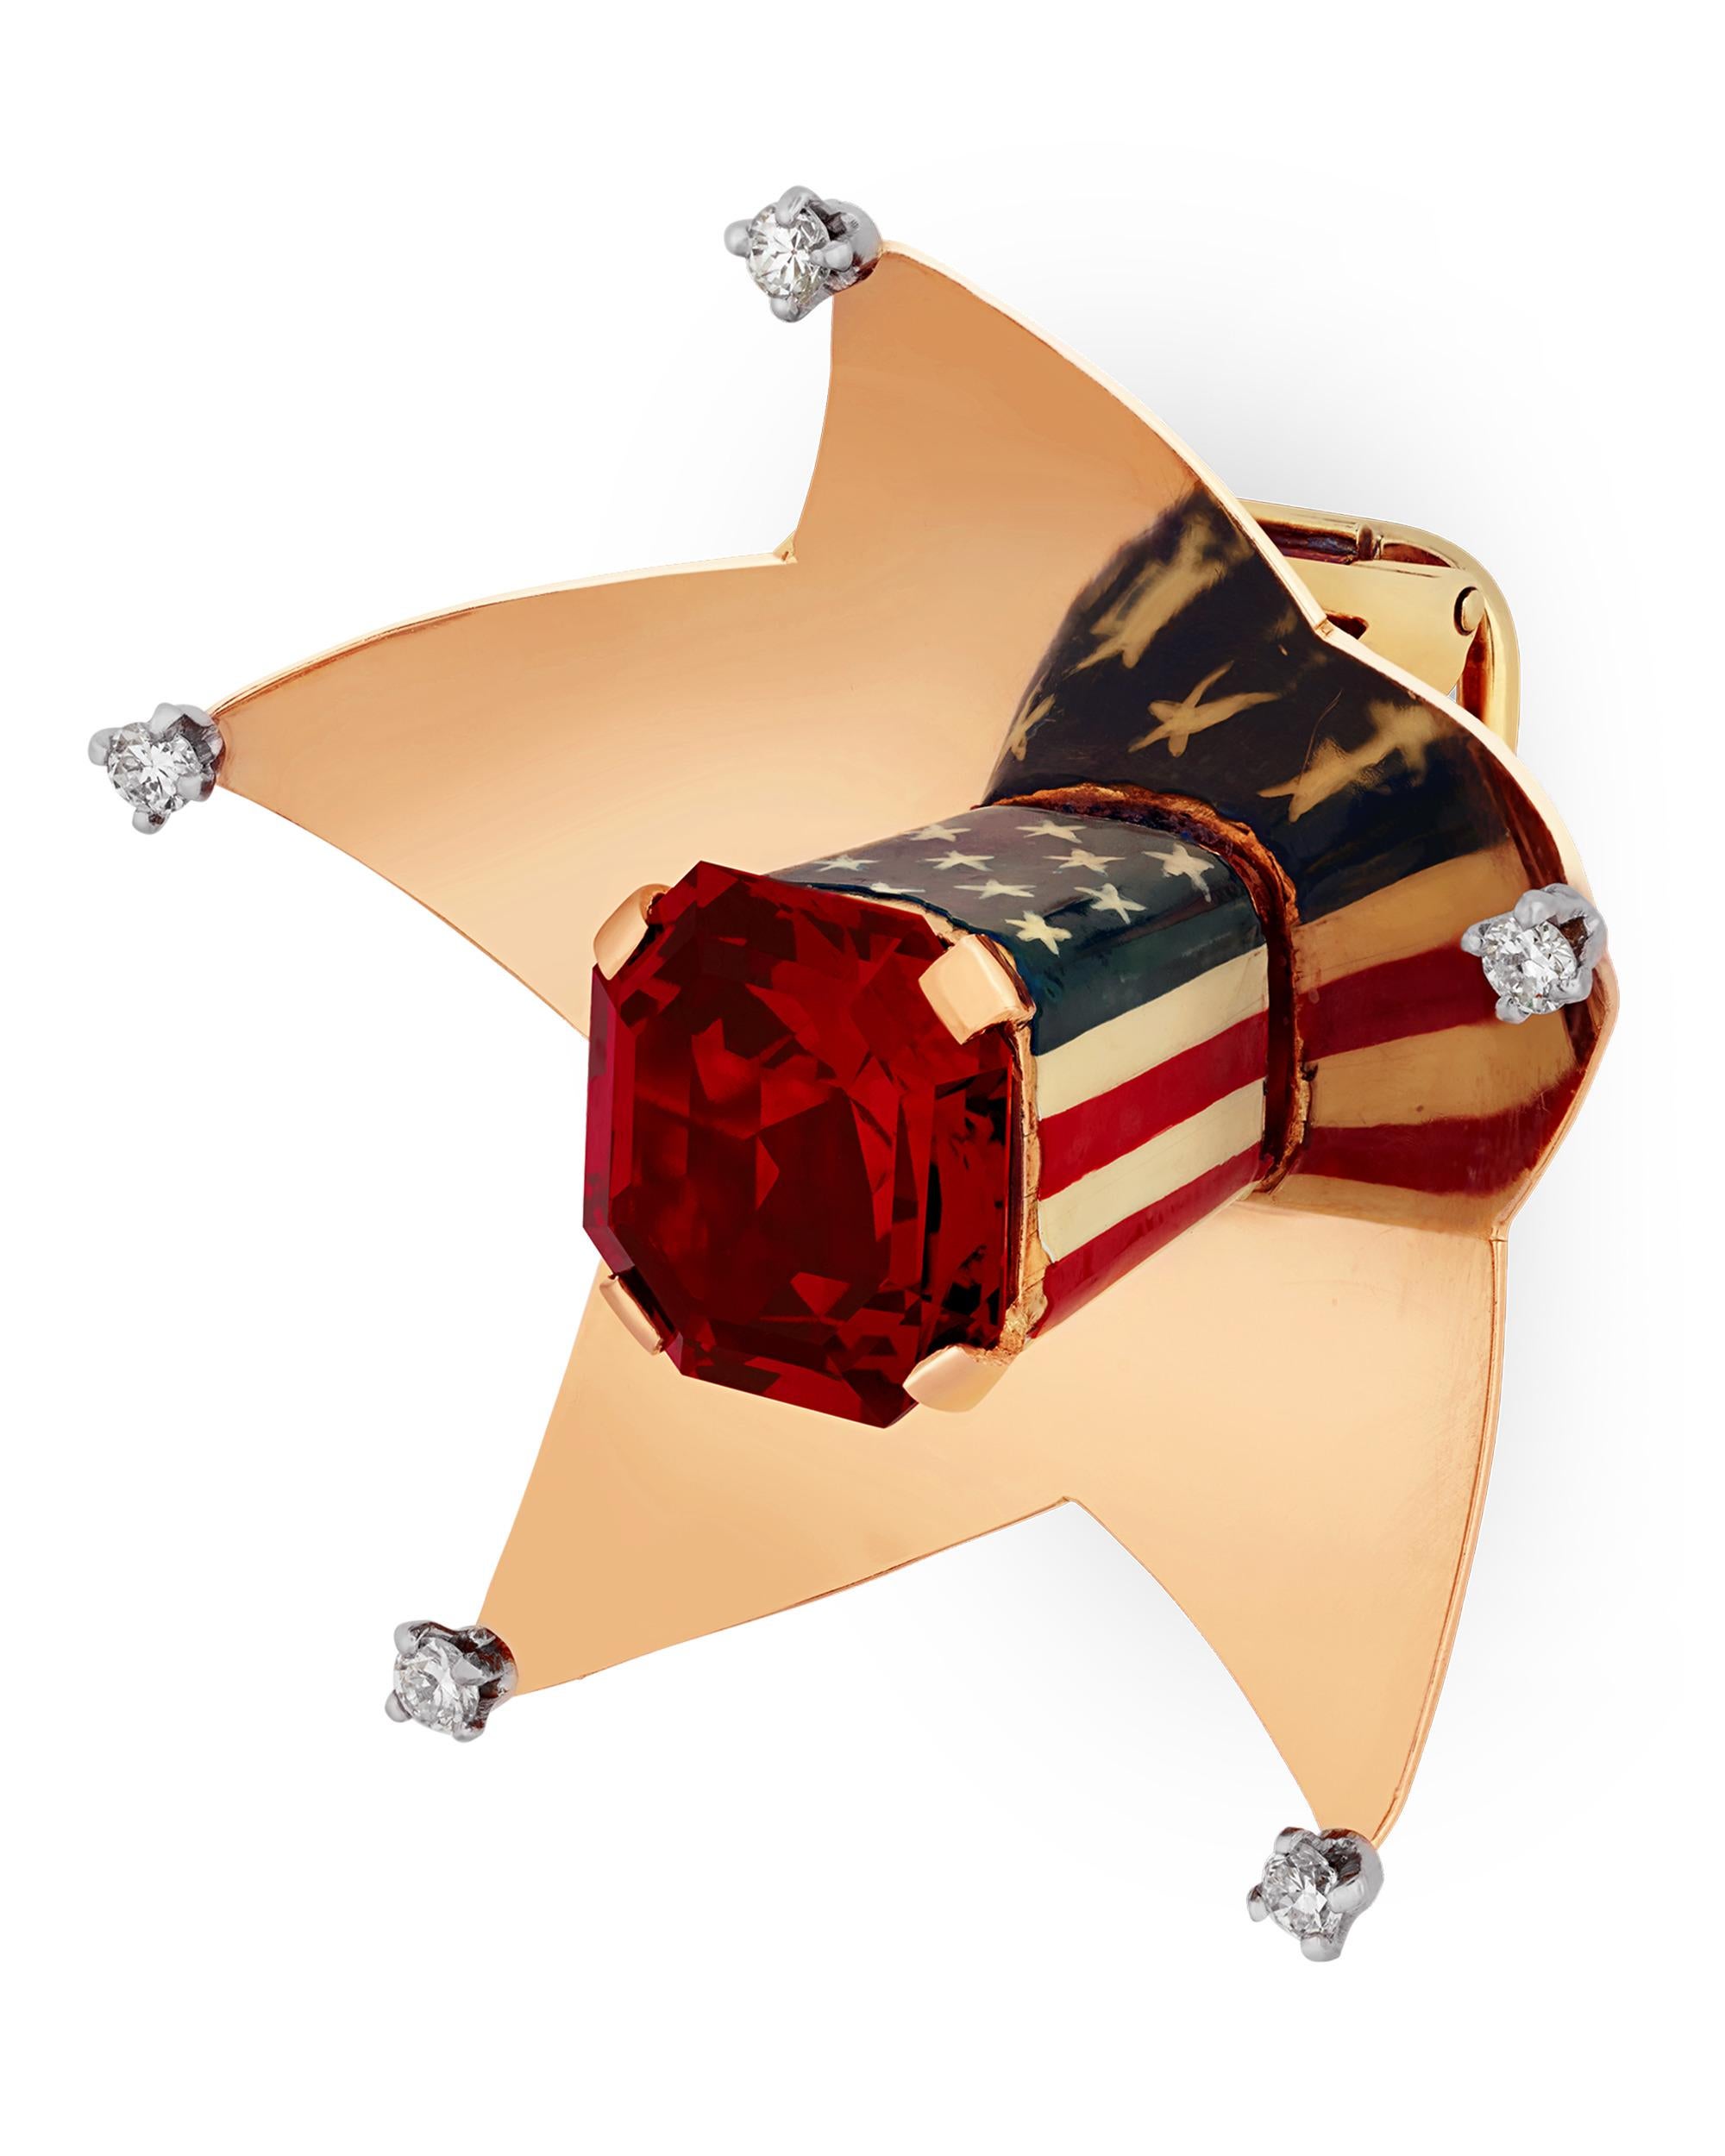 Diese originelle Cartier-Clip-Brosche für die Heimatfront strotzt nur so vor Patriotismus und ist mit einem 6,35-karätigen purpurnen Spinell besetzt. Das patentierte, illusorische Design von Cartier erweckt den Anschein einer amerikanischen Flagge,